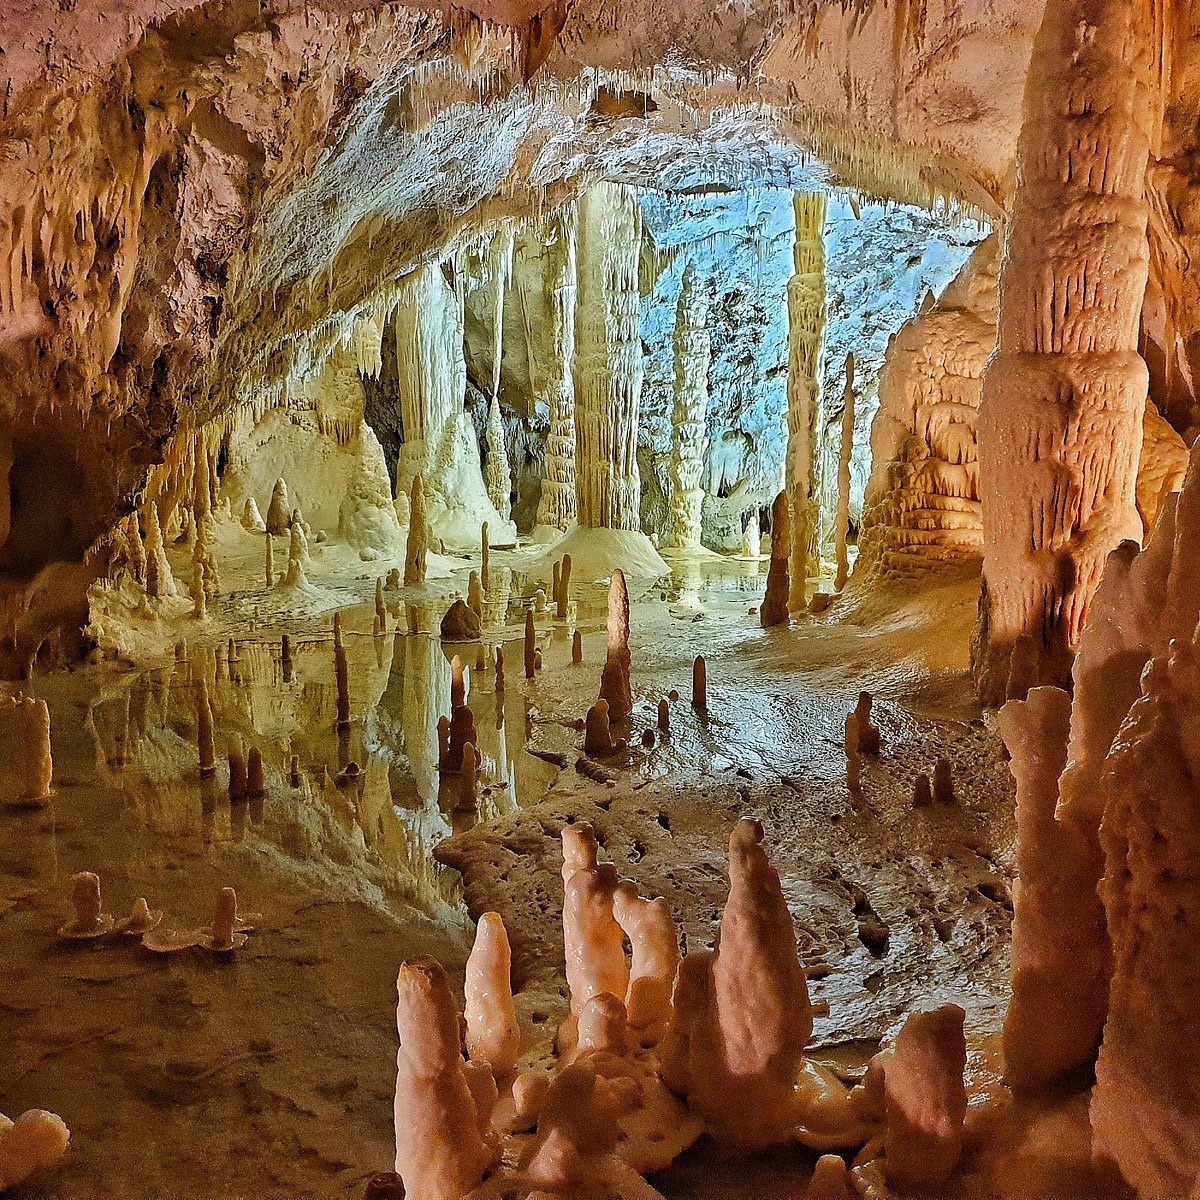 Le Grotte di Frasassi di Genga